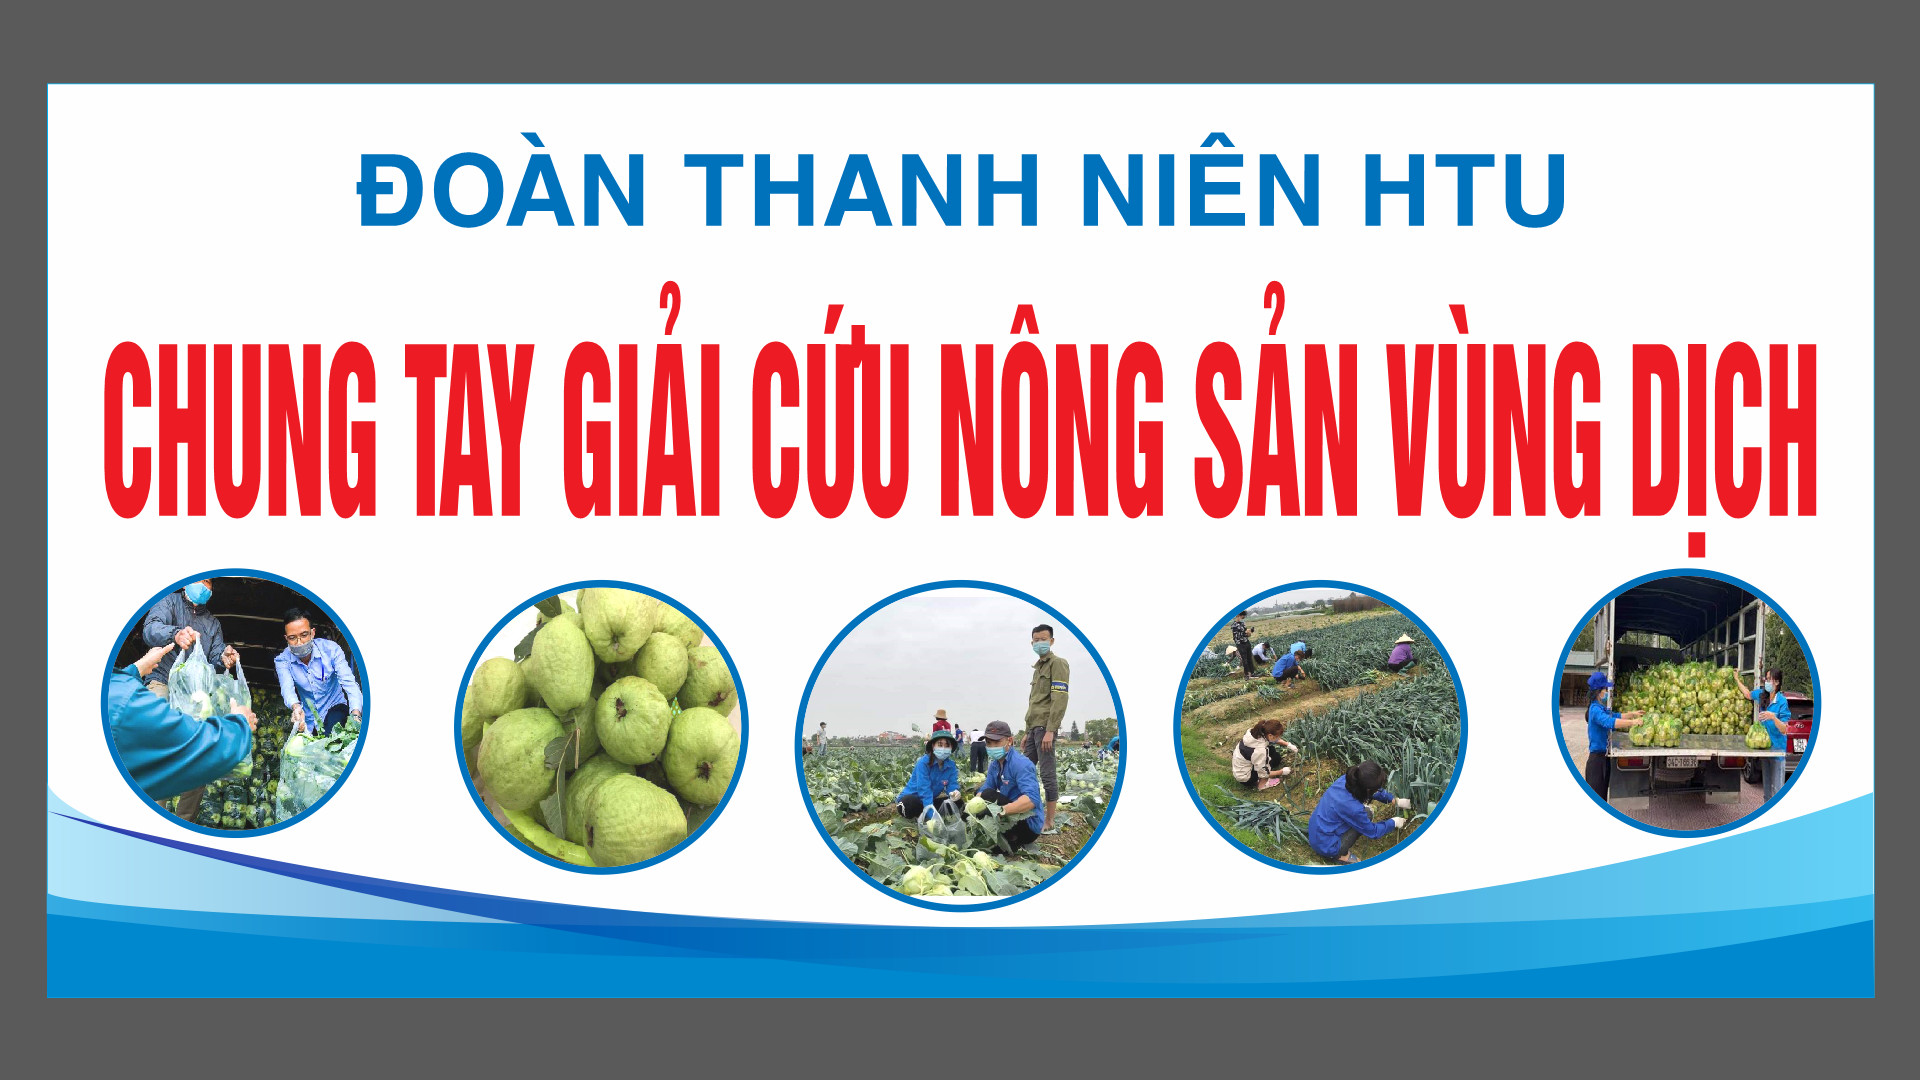 Đoàn thanh niên trường Đại học Công Nghiệp Dệt May Hà Nội chung tay giải cứu nông sản vùng dịch